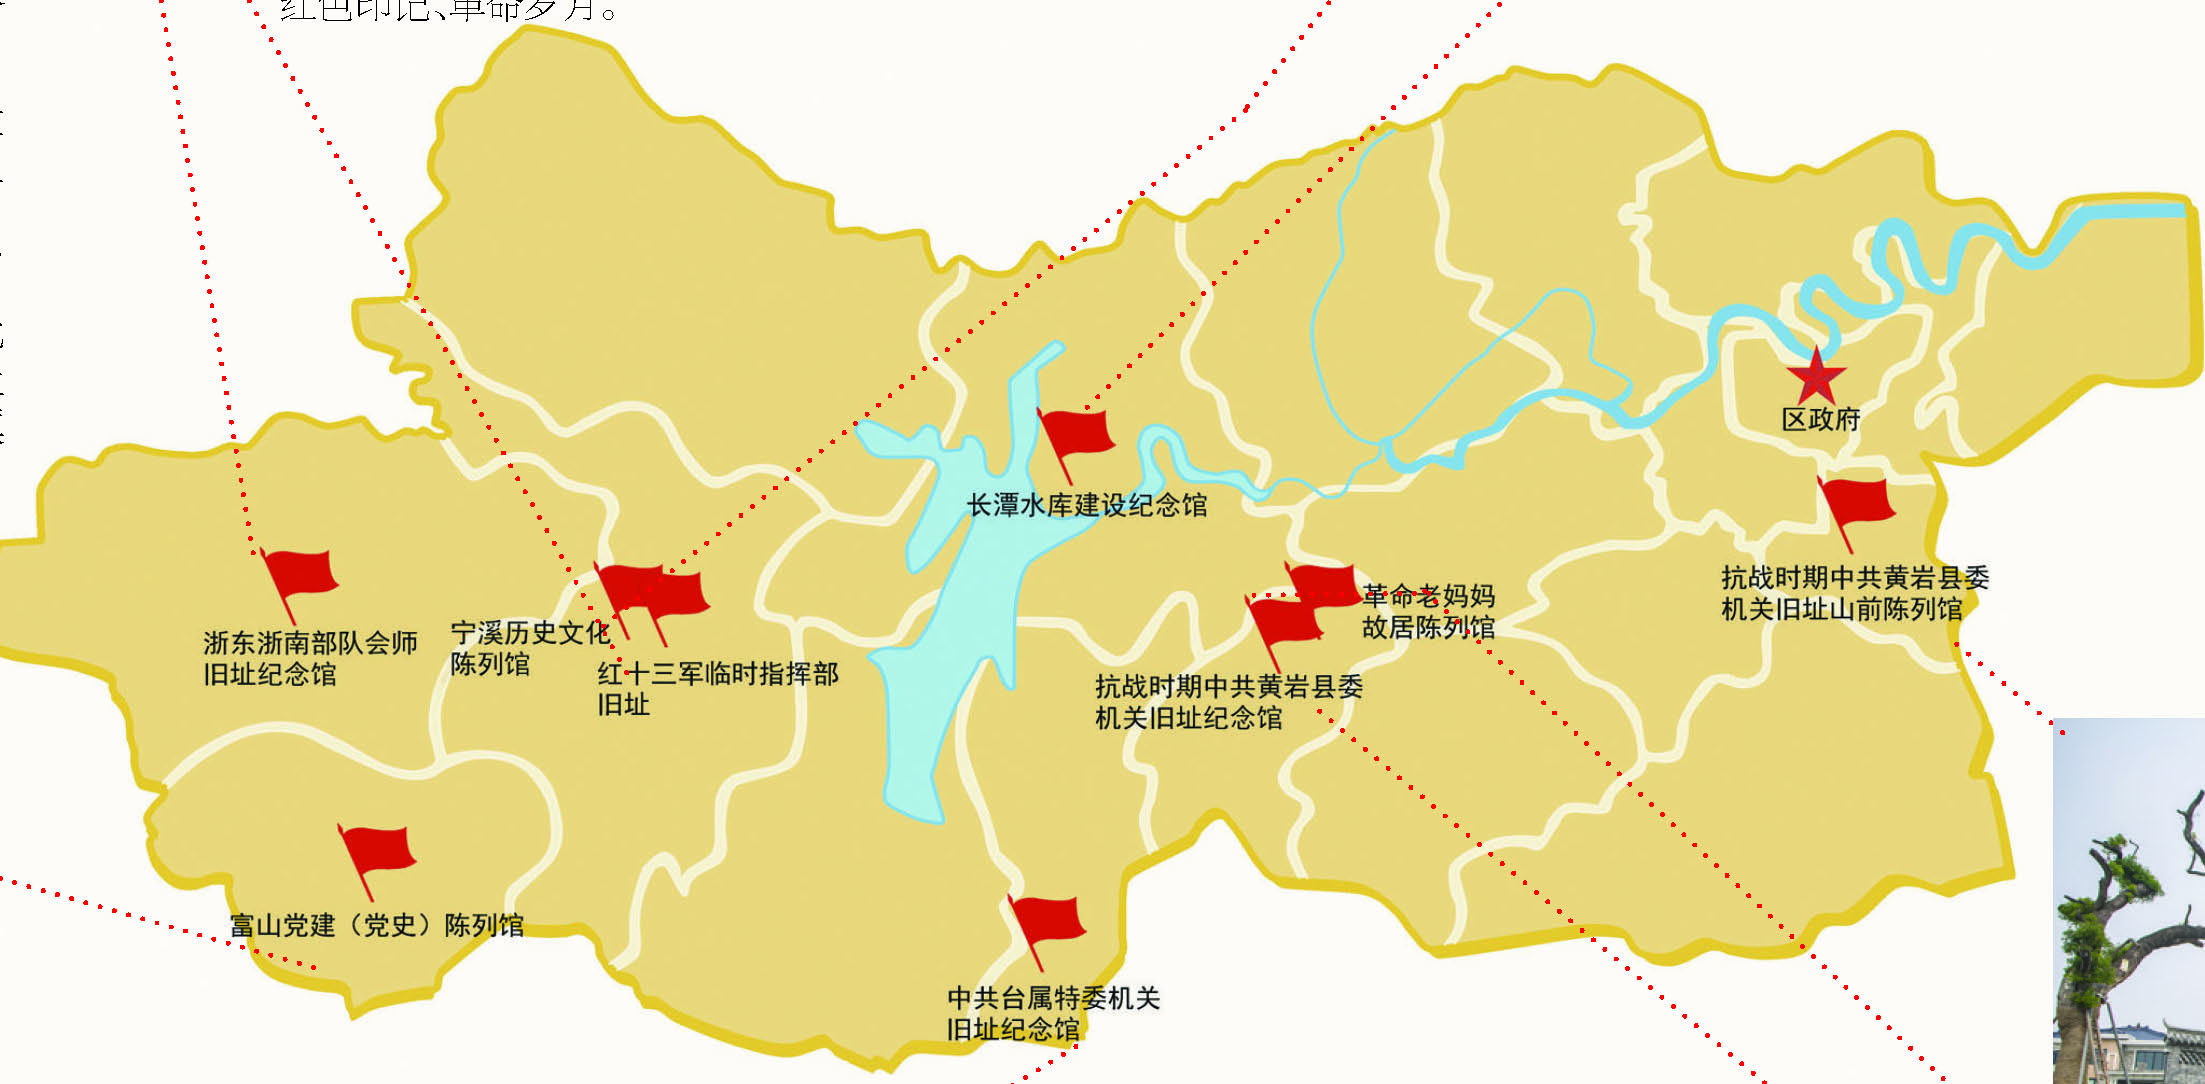 安庆师大推出安庆红旅地图 革命文物“变身”景点路标__凤凰网